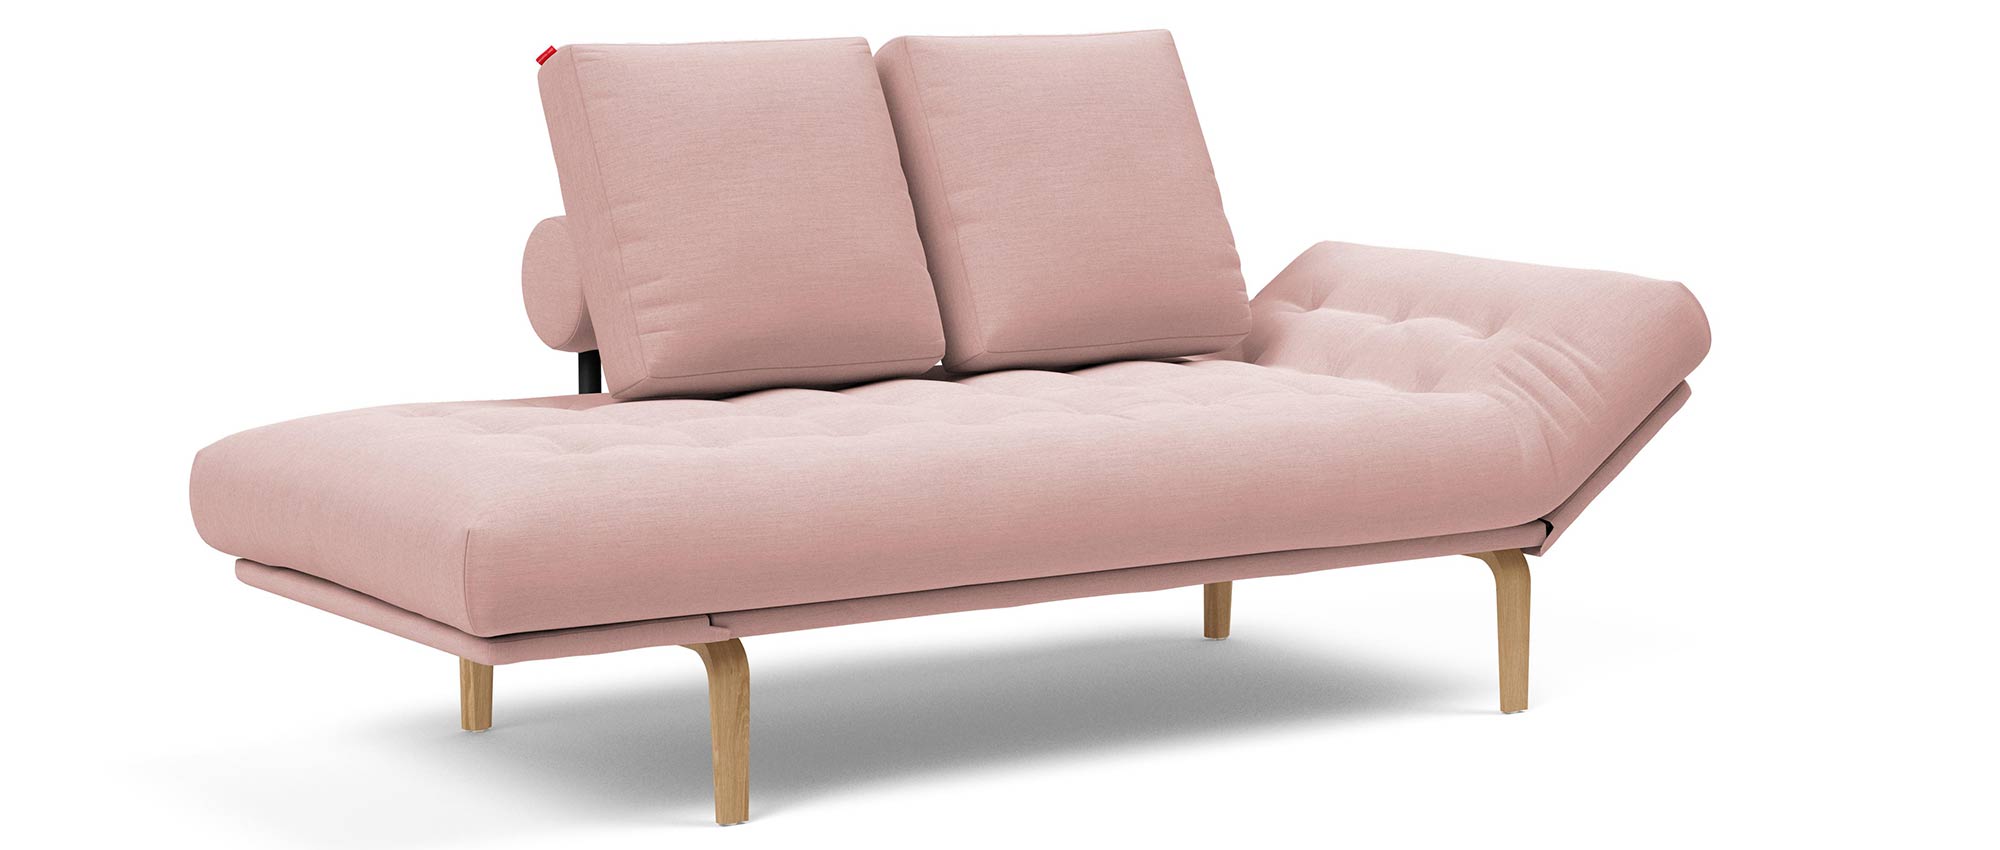 ROLLO von Innovation Schlafsofa Gästebett in rosa mit Holzbeinen aus Eiche - 80x200 cm Liegefläche